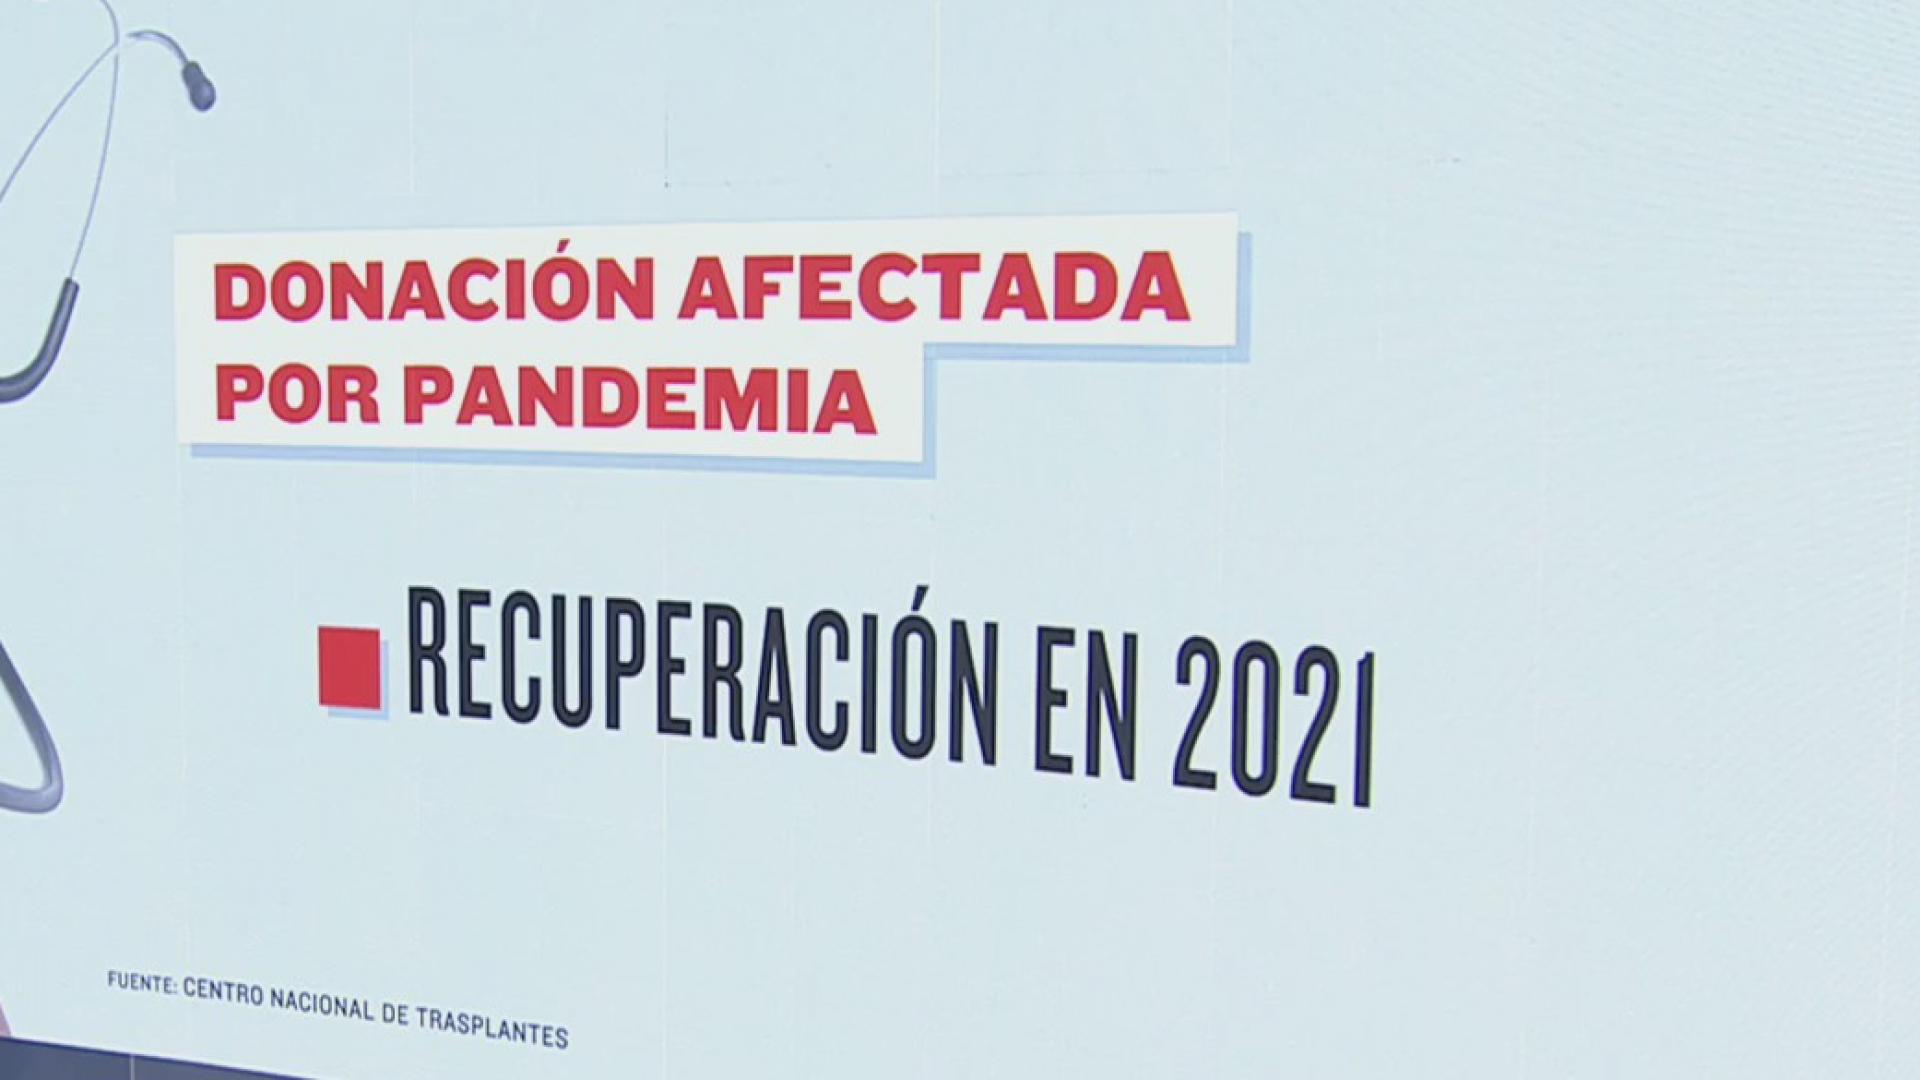 2021 registro aumento en donacion de organos en mexico